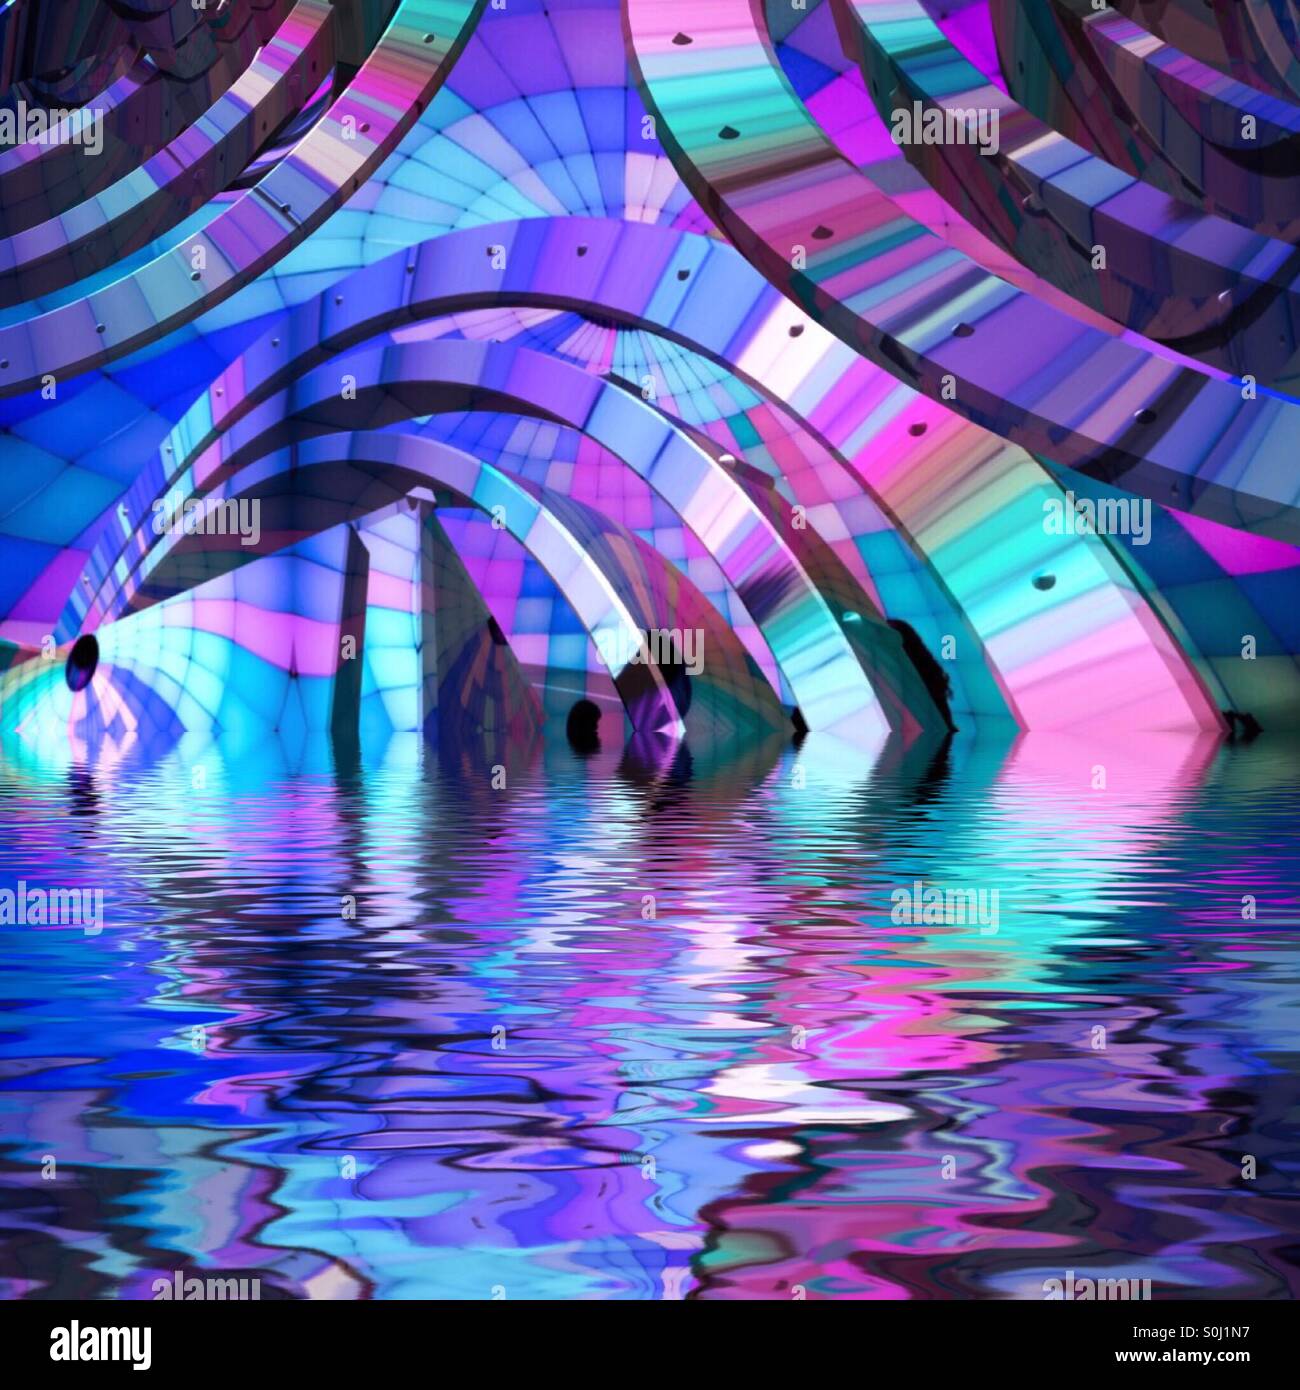 Un immagine astratta di blu, rosa, viola e Aqua forme curvilinee riflettendo in acqua. Foto Stock